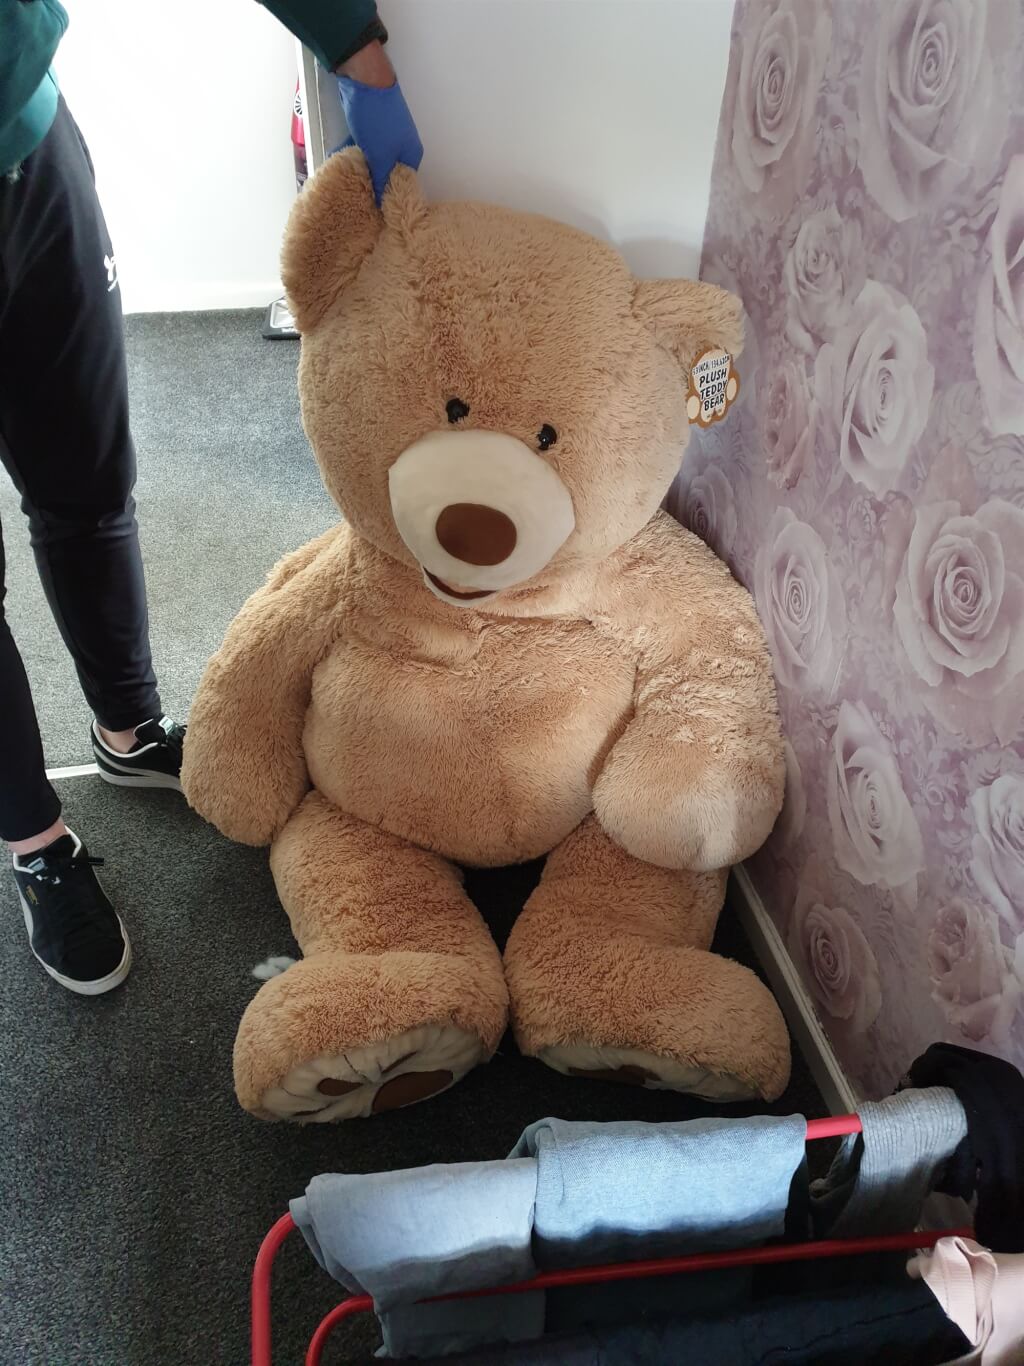 警察追捕偷车贼 发现泰迪熊玩偶竟会呼吸